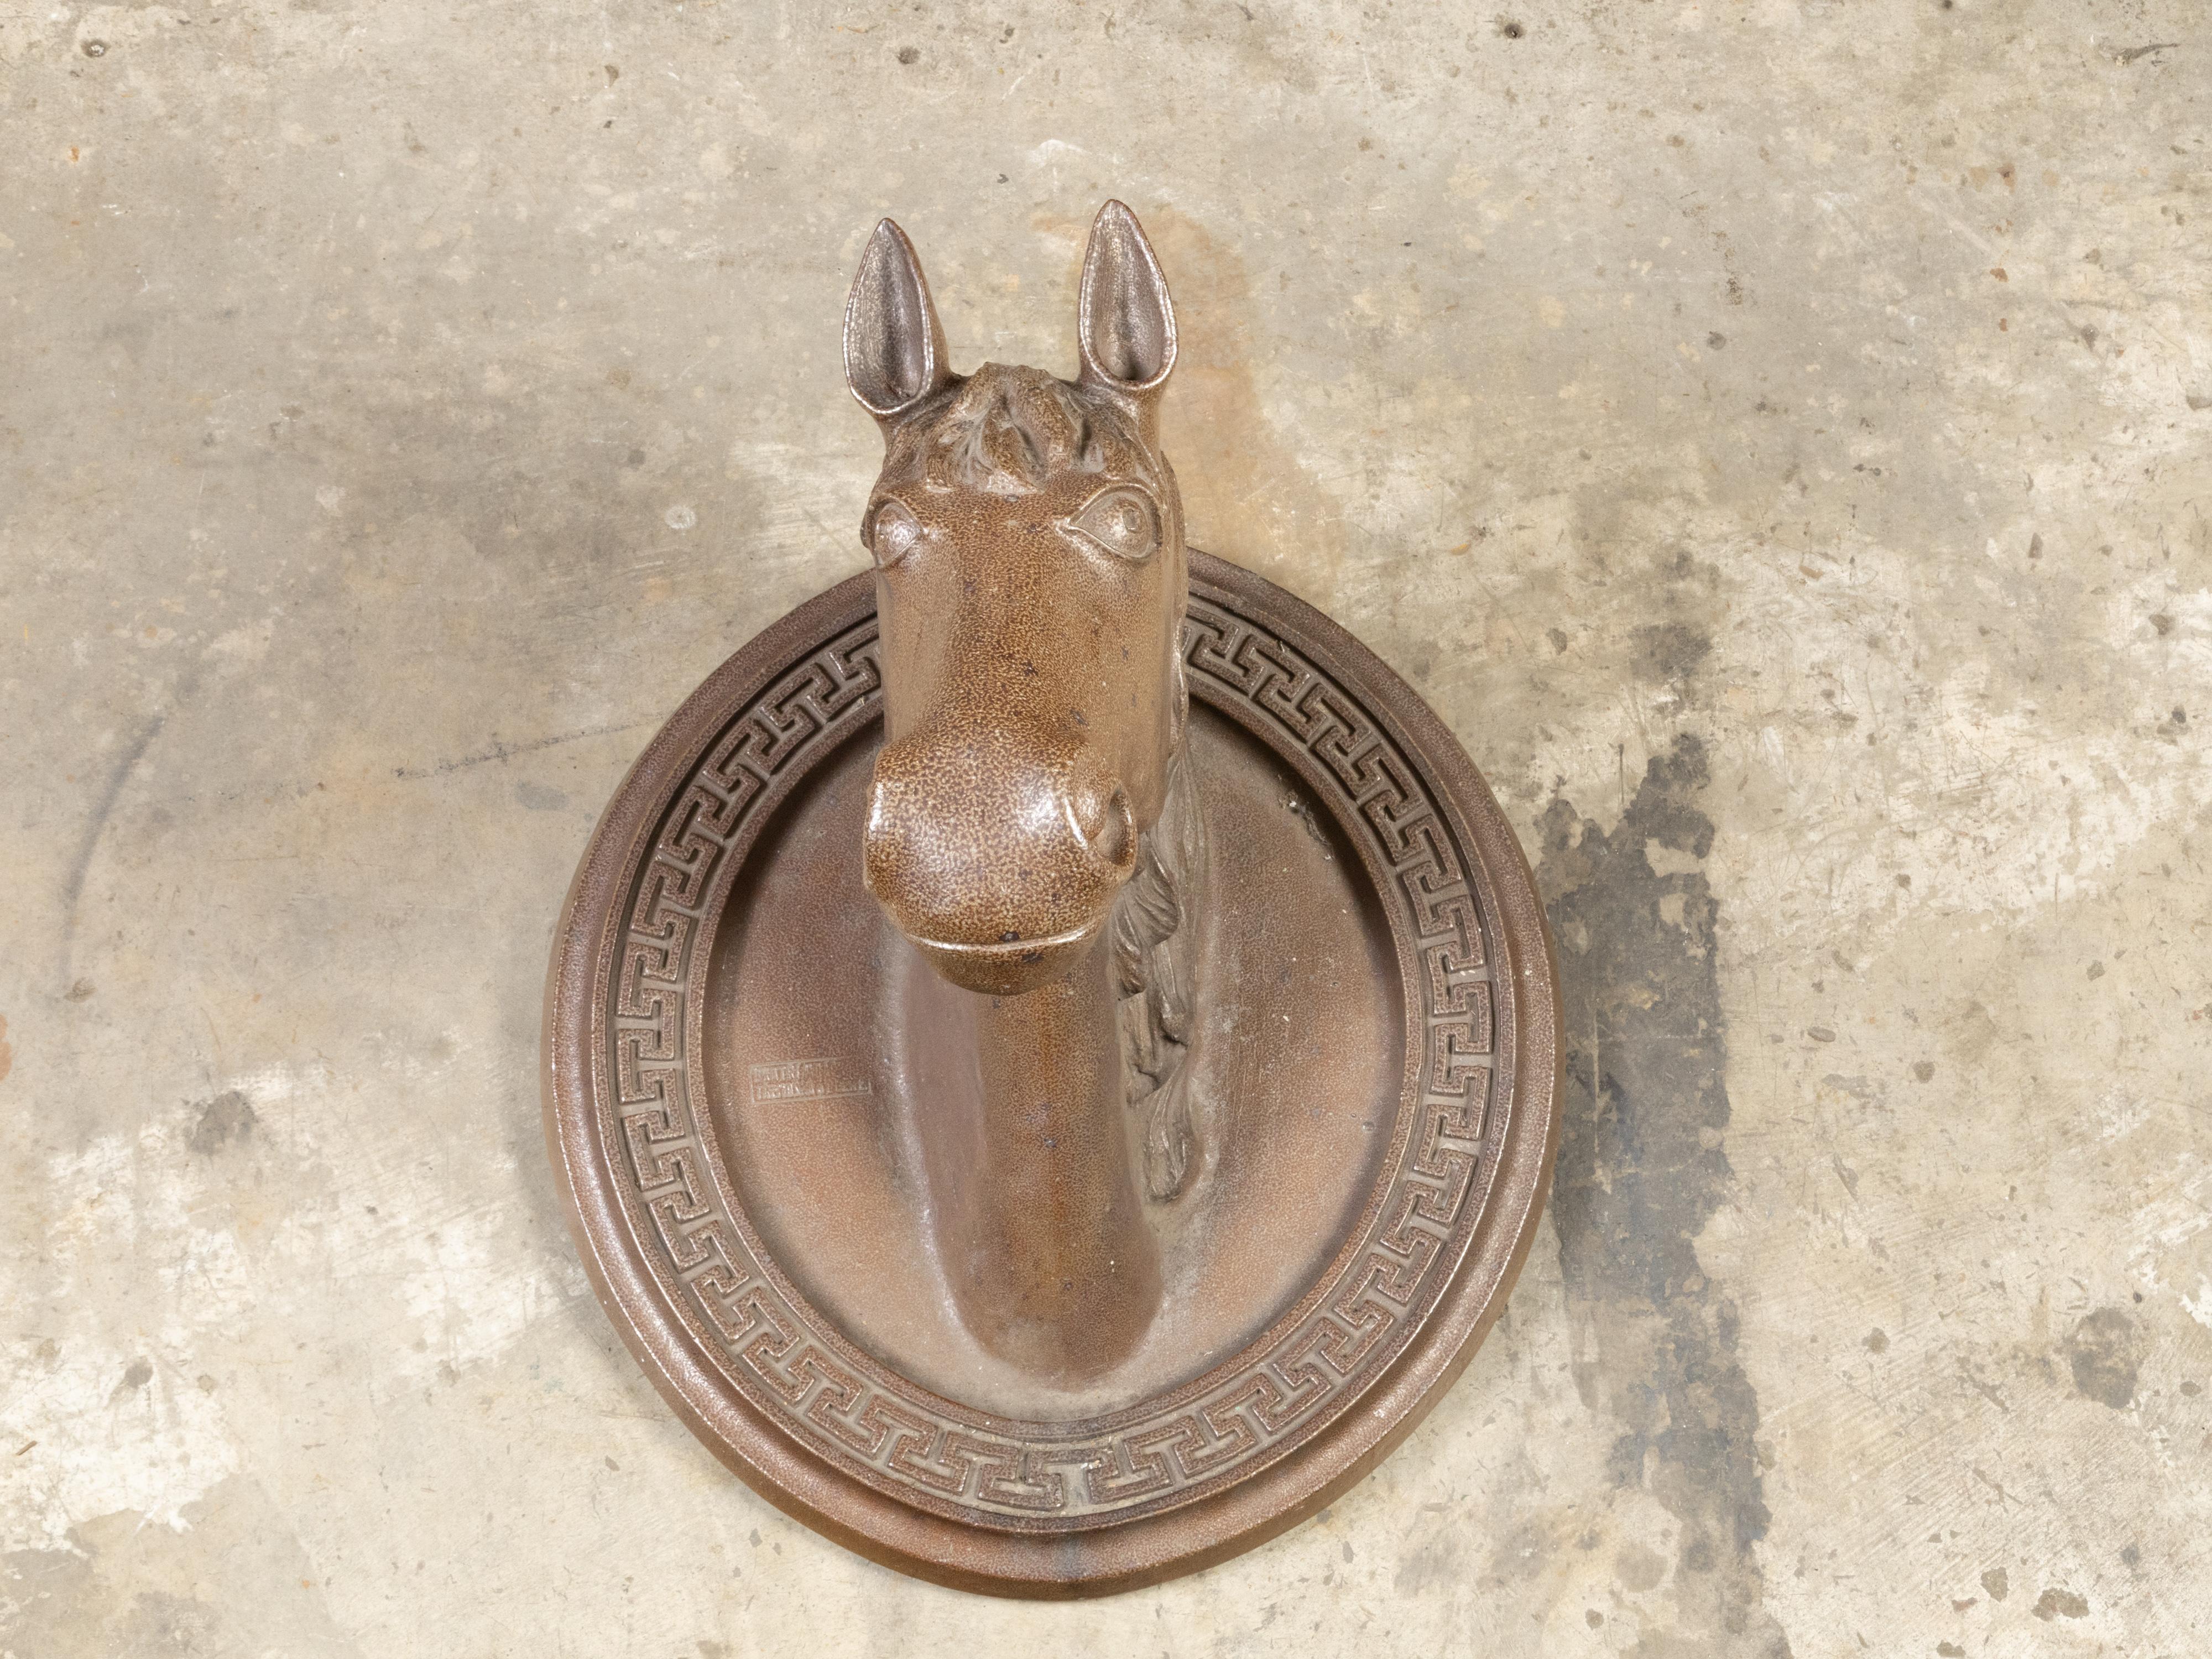 Sculpture de tête de cheval en terre cuite d'époque victorienne anglaise du 19e siècle sur plaque de fond ovale avec motifs de clé grecque. Créée en Angleterre sous le règne de la reine Victoria au XIXe siècle, cette sculpture murale en terre cuite